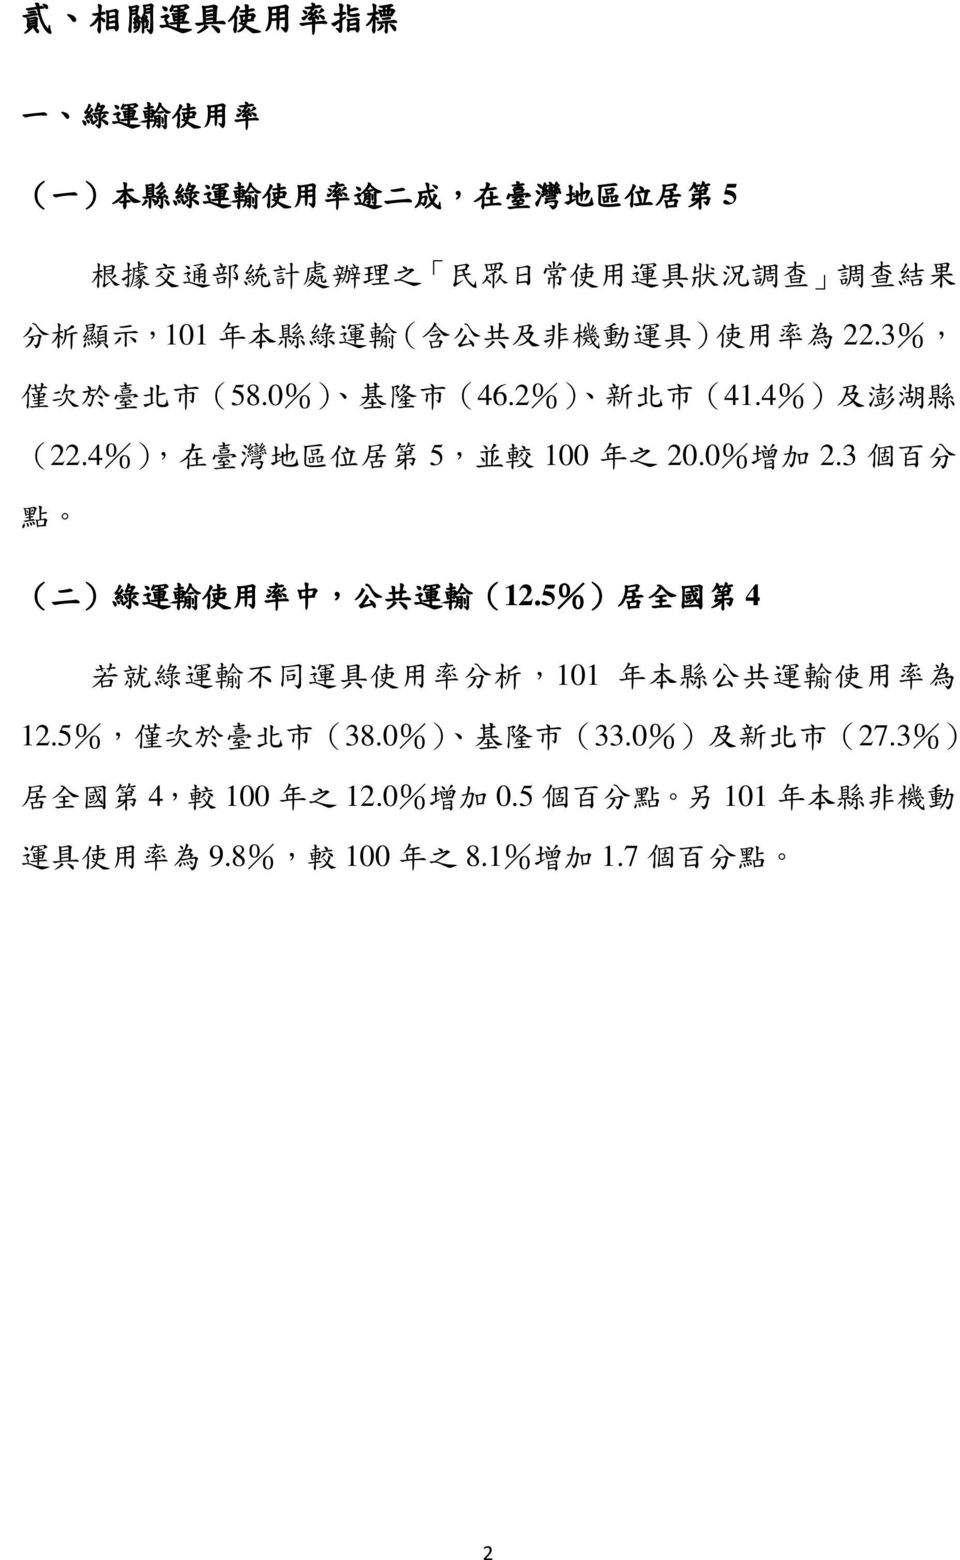 4%), 在 臺 灣 地 區 位 居 第 5, 並 較 100 年 之 20.0% 增 加 2.3 個 百 分 點 ( 二 ) 綠 運 輸 使 用 率 中, 公 共 運 輸 (12.